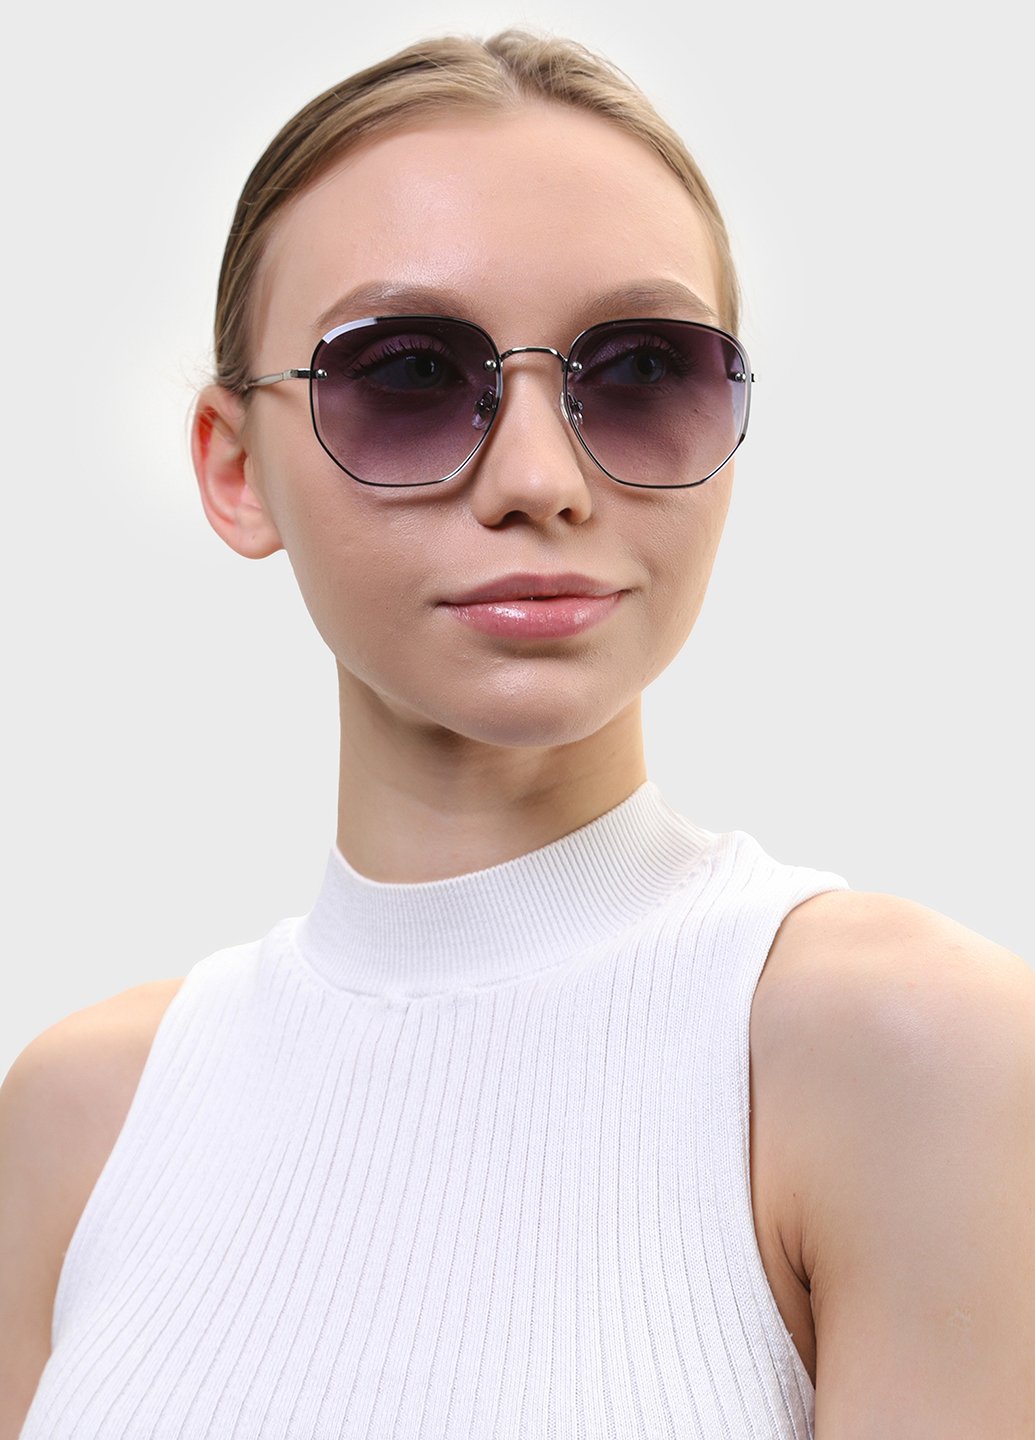 Купить Женские солнцезащитные очки Merlini с поляризацией S31448 117151 - Серый в интернет-магазине